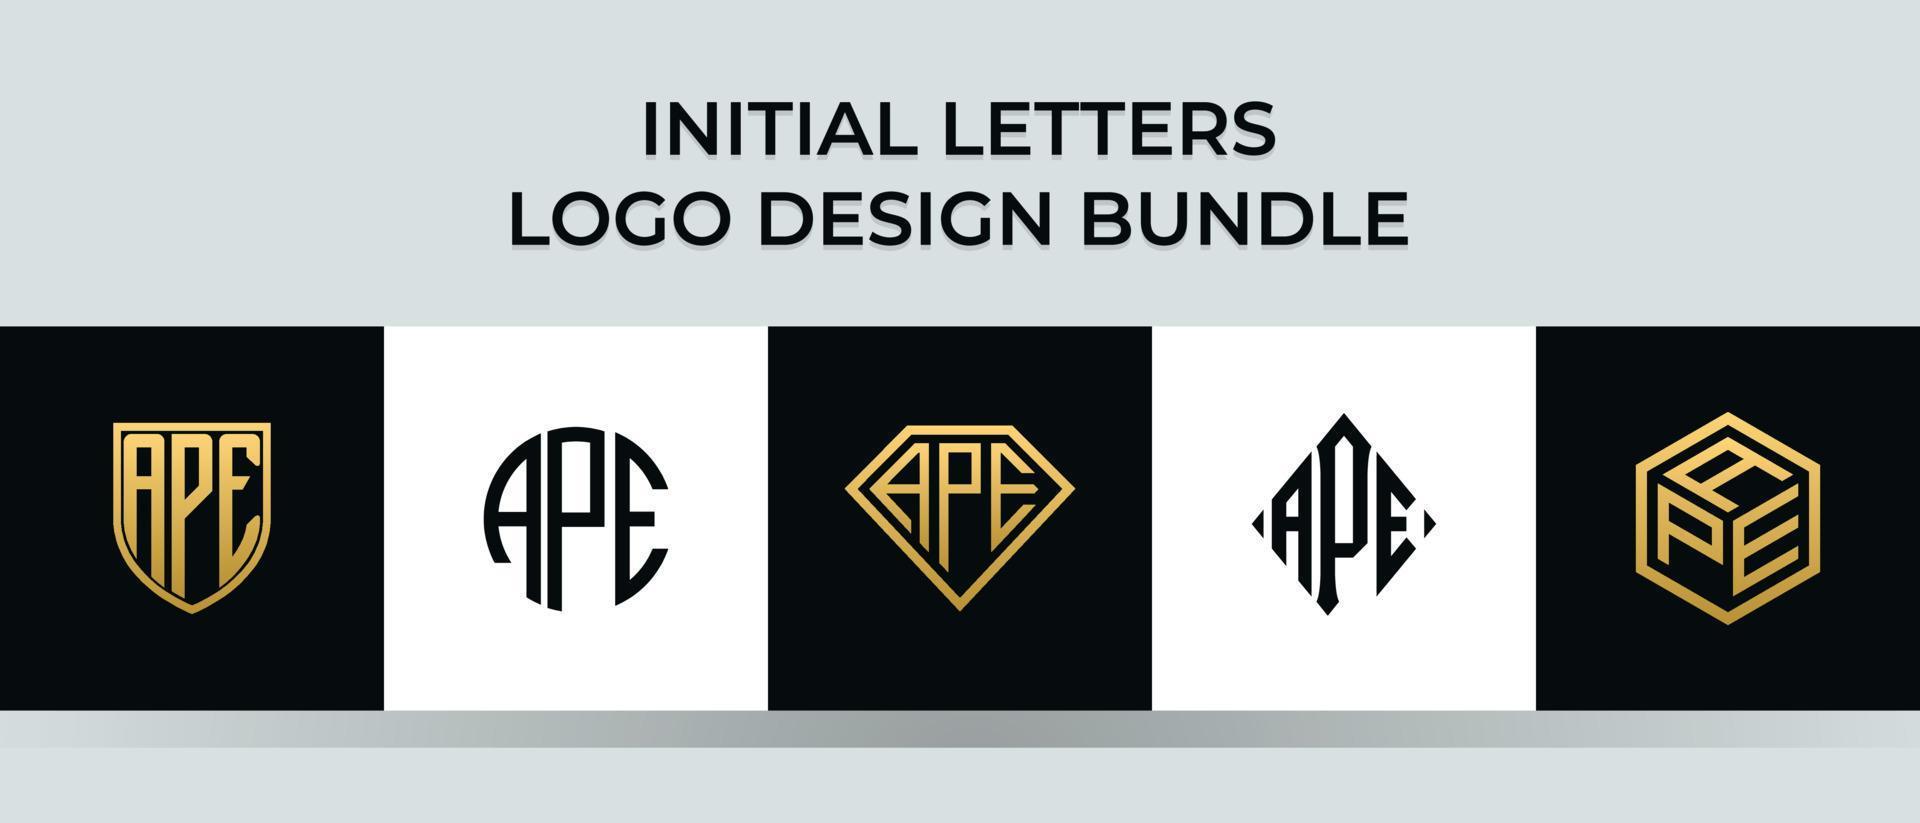 Initial letters APE logo designs Bundle vector